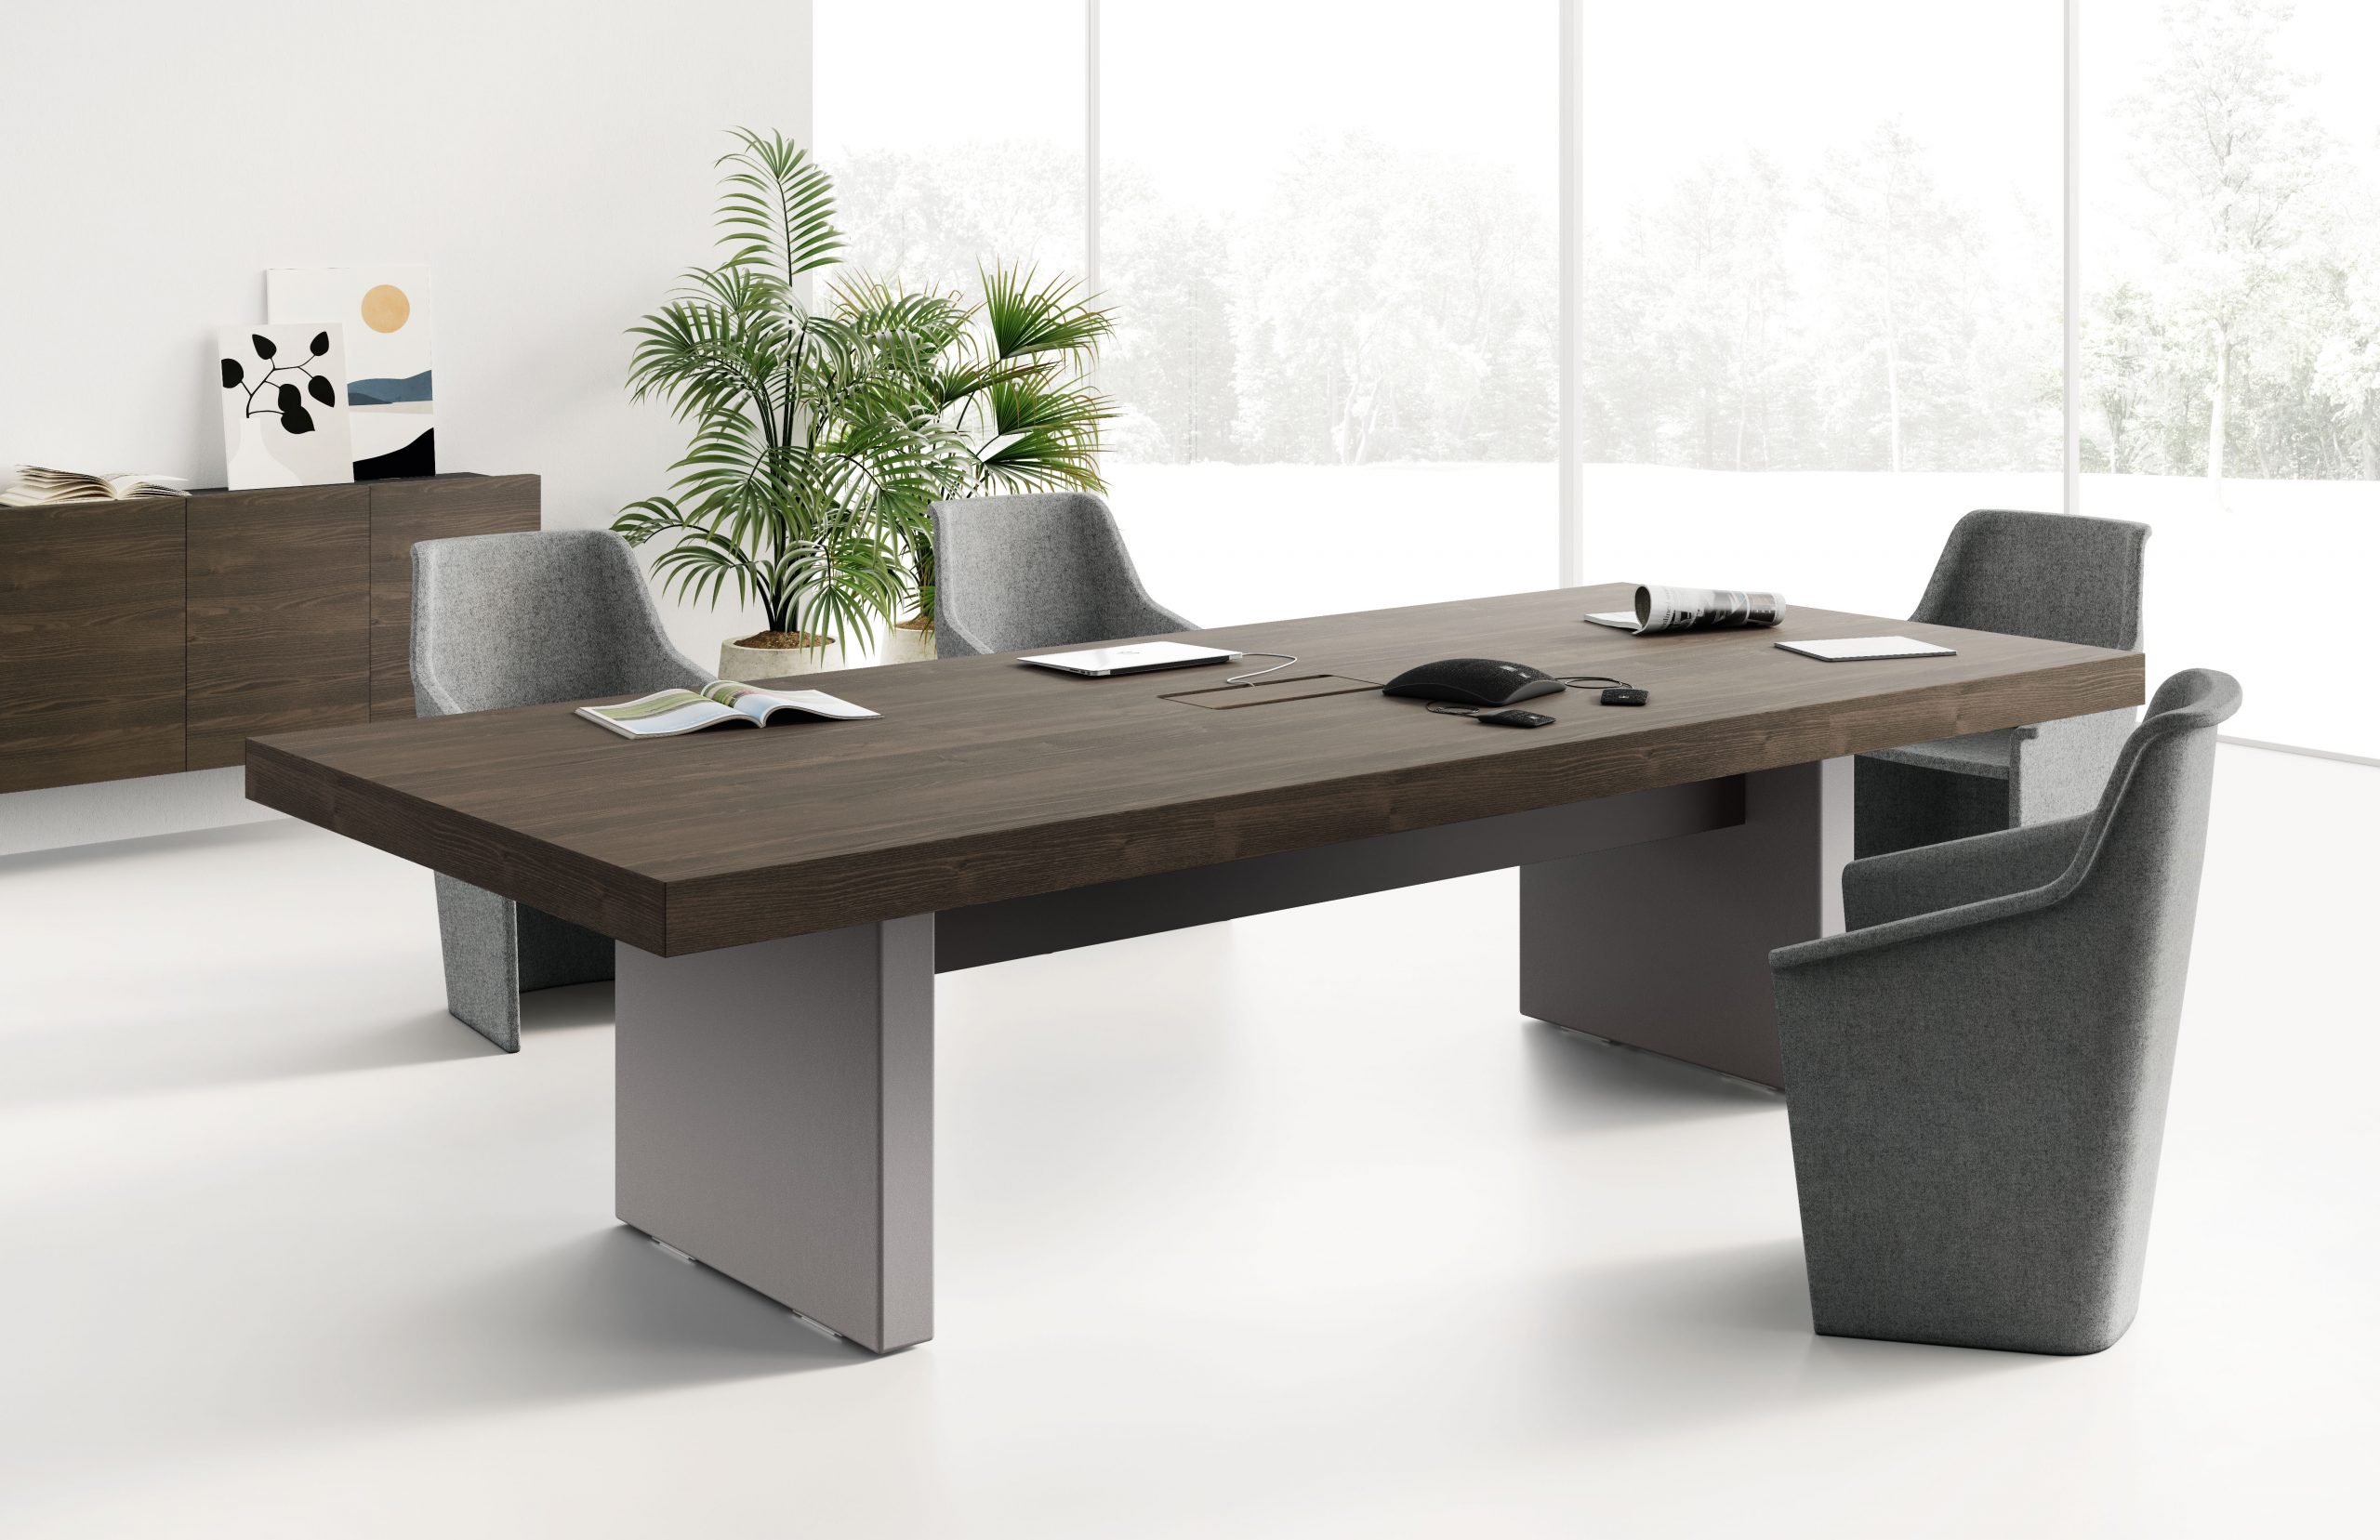 Las Mobili Jera awesome unique executive office desk, Orlandini design